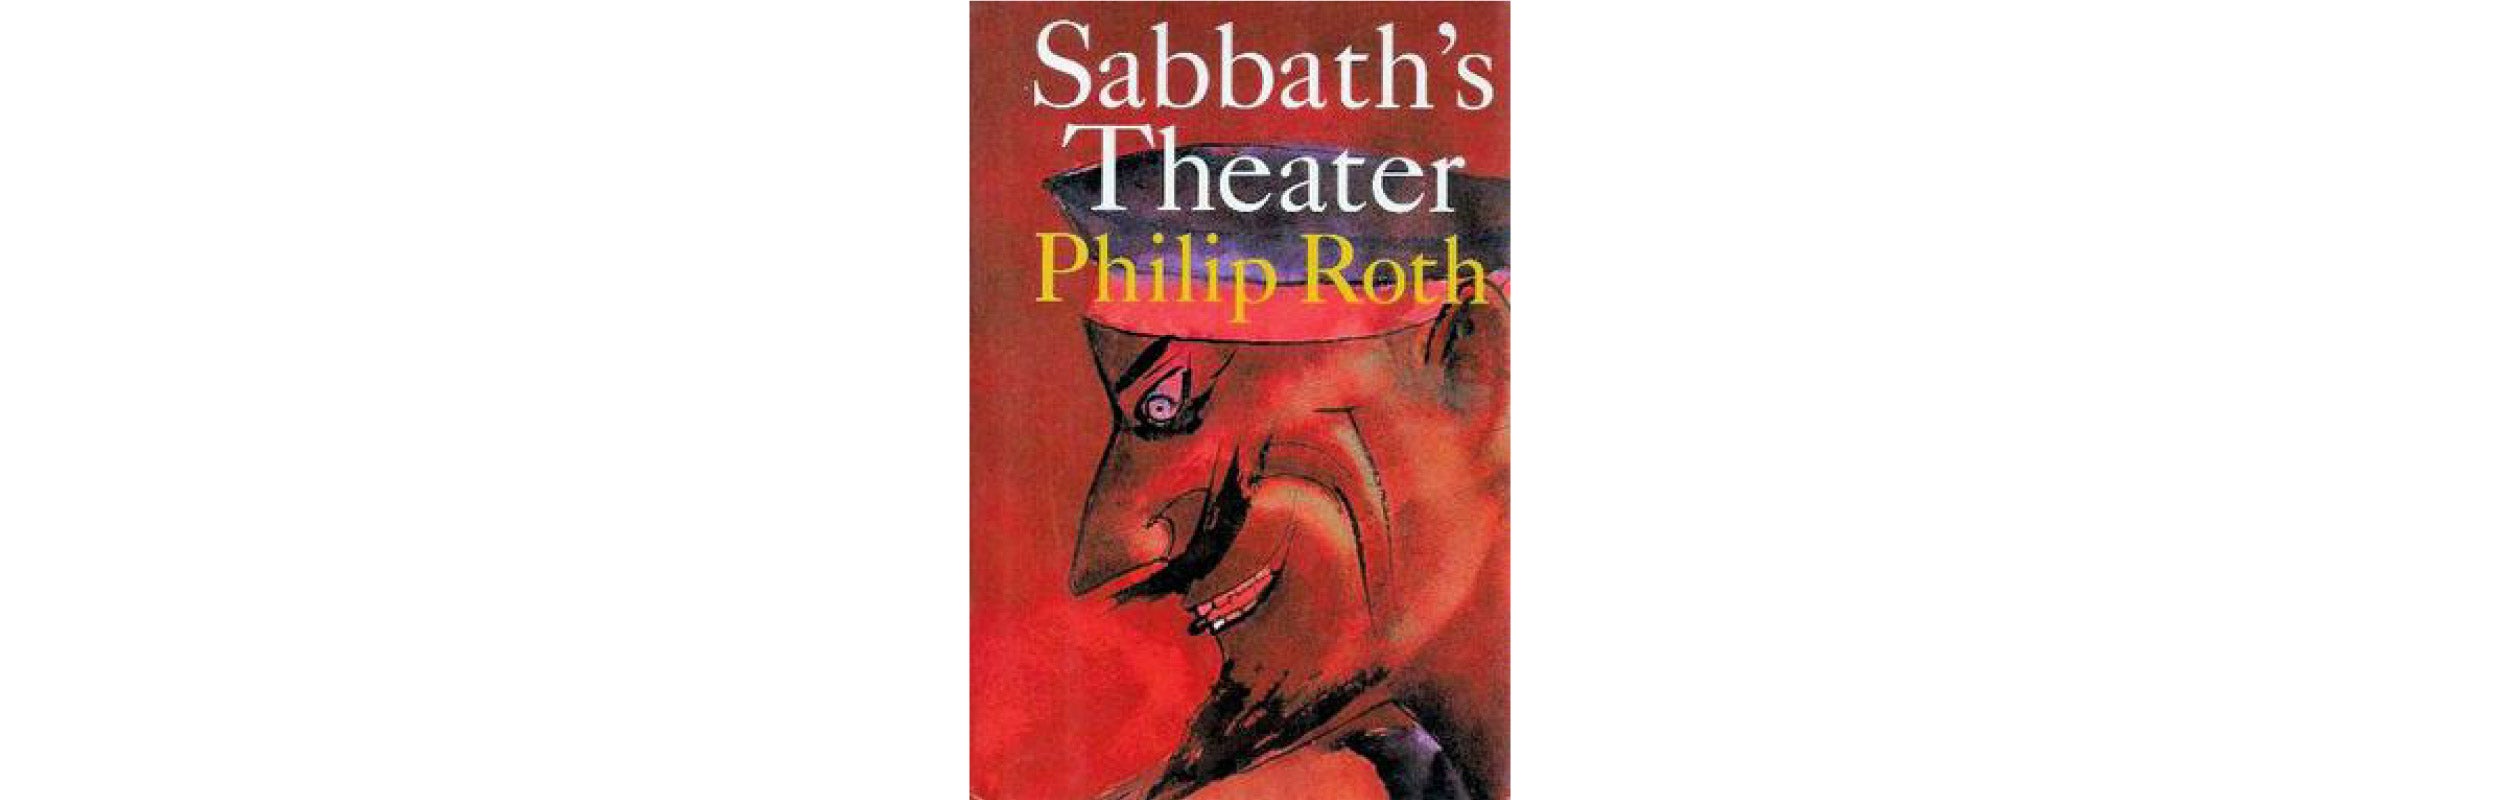 "Sabbath's Theater" book cover.